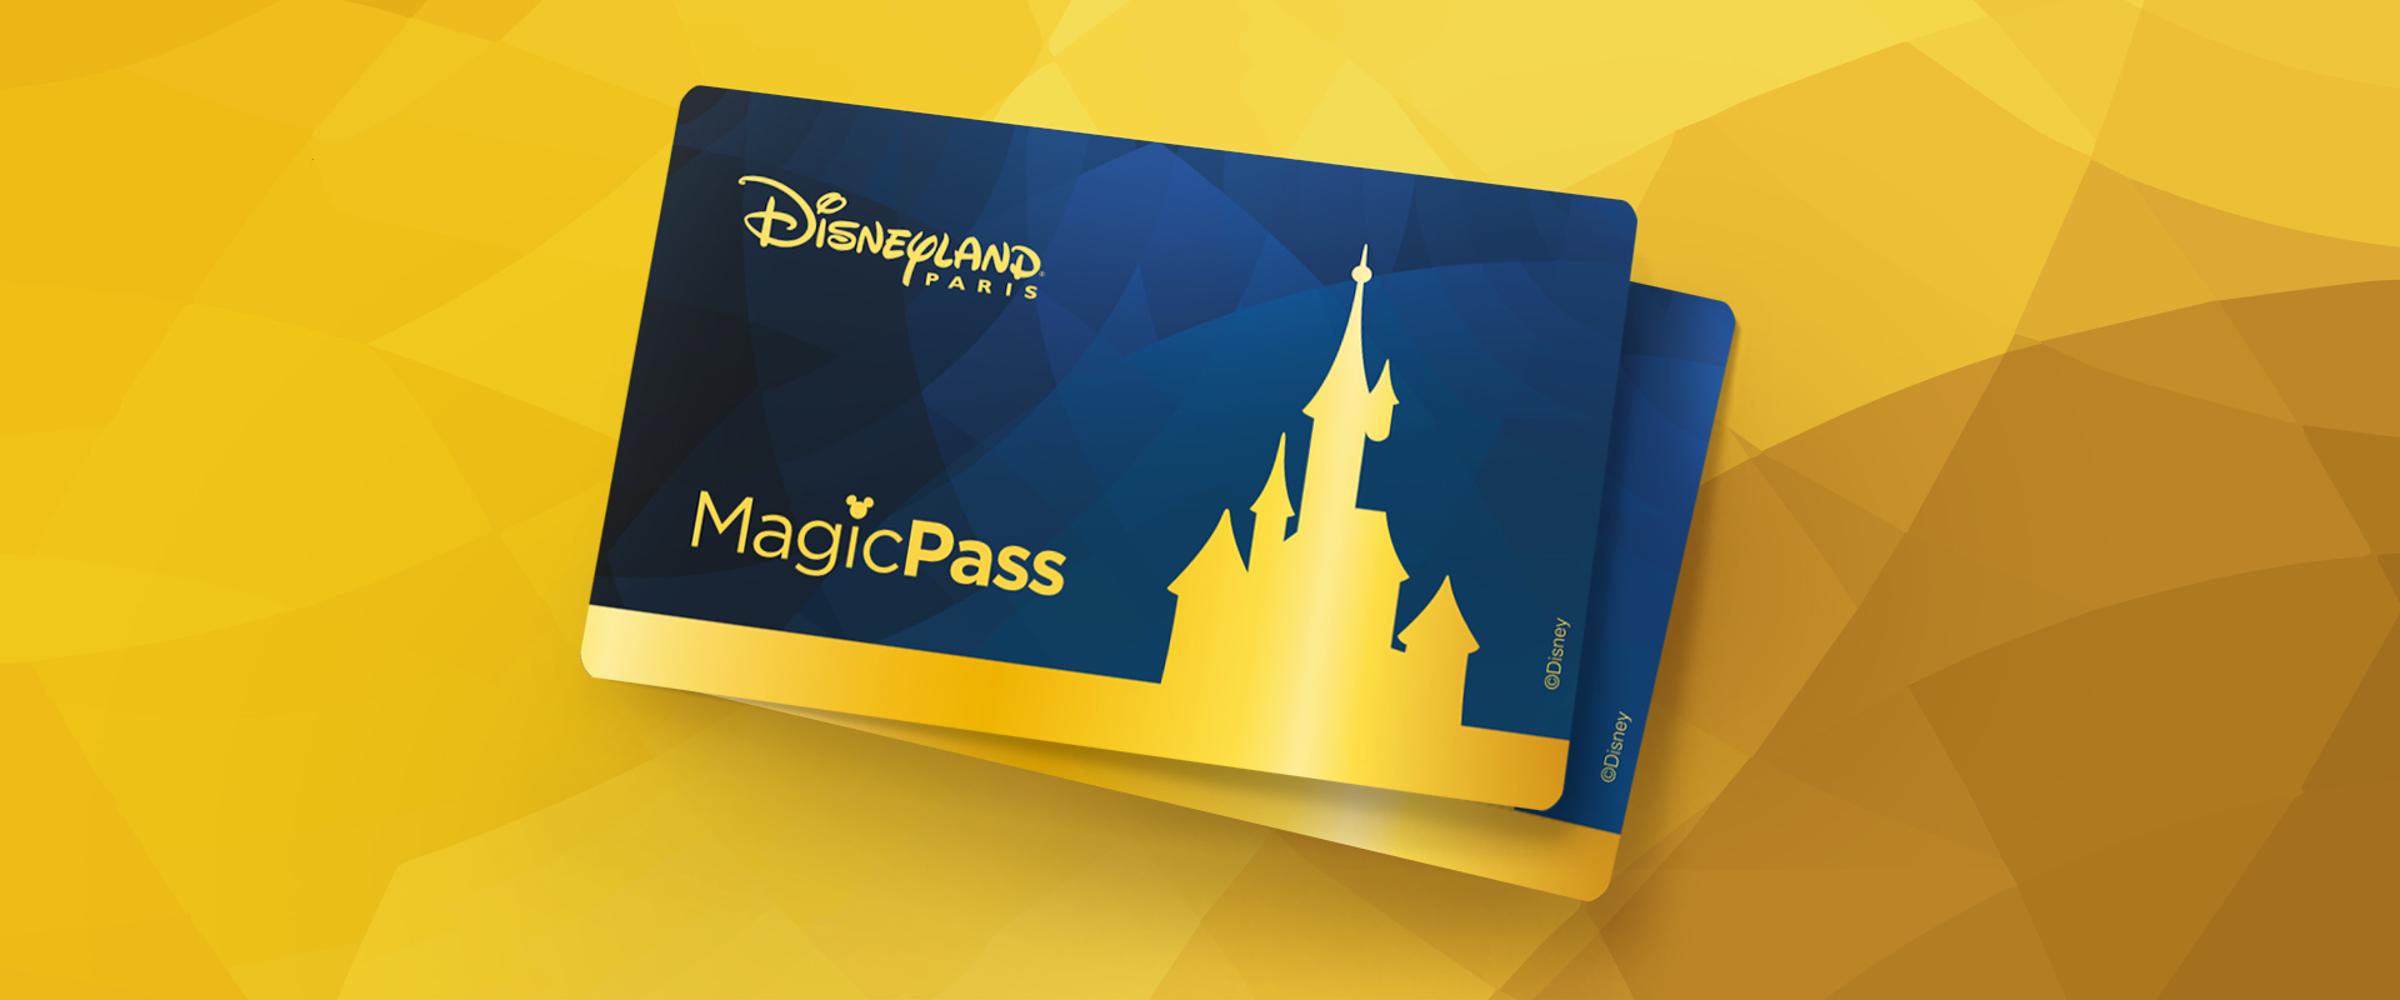 MagicPass AllinOne Pass Disneyland Paris